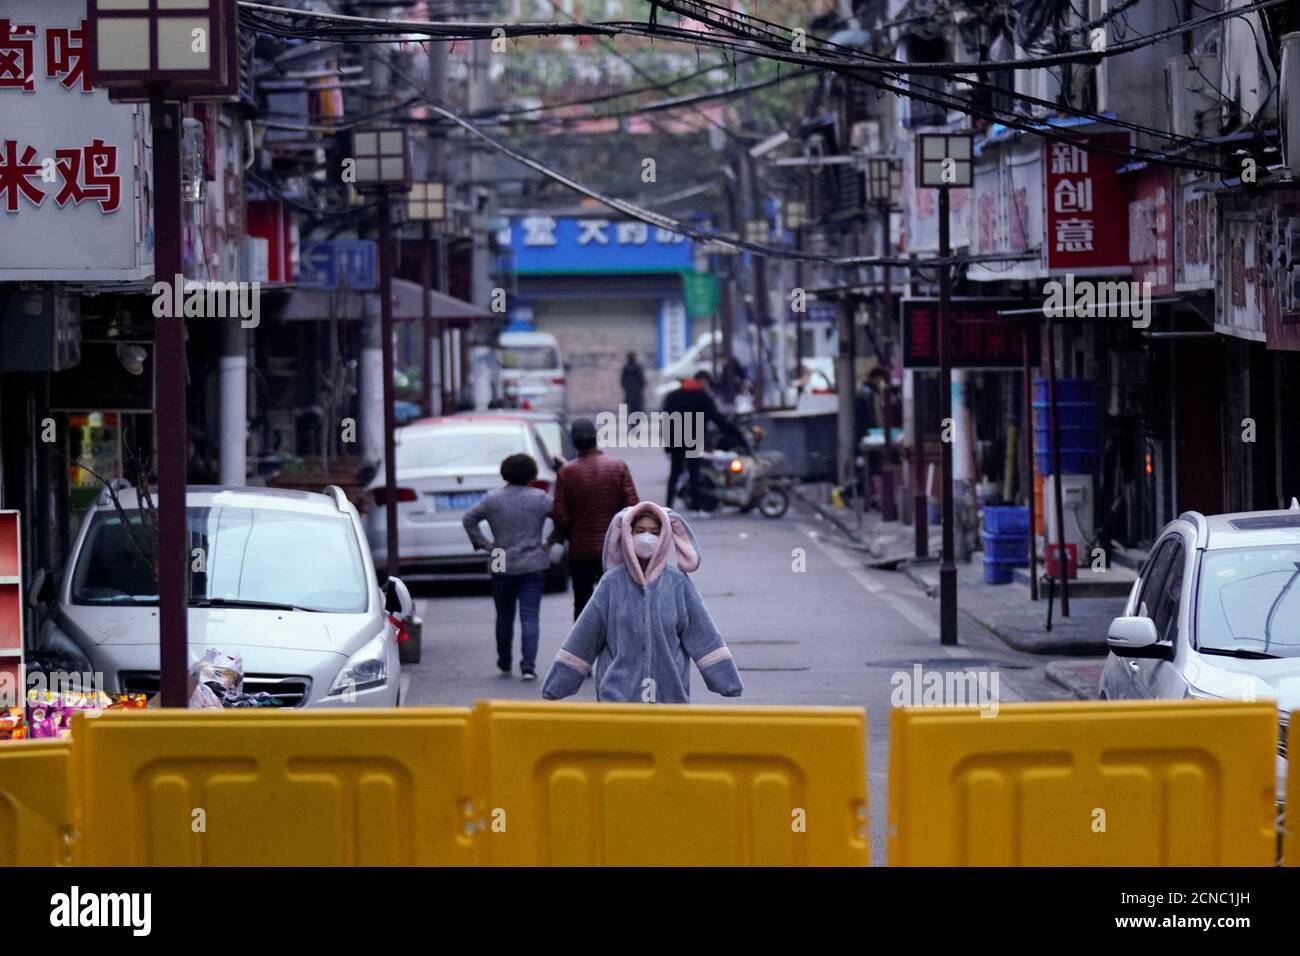 Una mujer que lleva una máscara facial y un pijama es vista en una zona residencial bloqueada por barreras en Wuhan, provincia de Hubei, el epicentro del brote de la enfermedad coronavirus de China (COVID-19), el 1 de abril de 2020. REUTERS/Aly canción Foto de stock